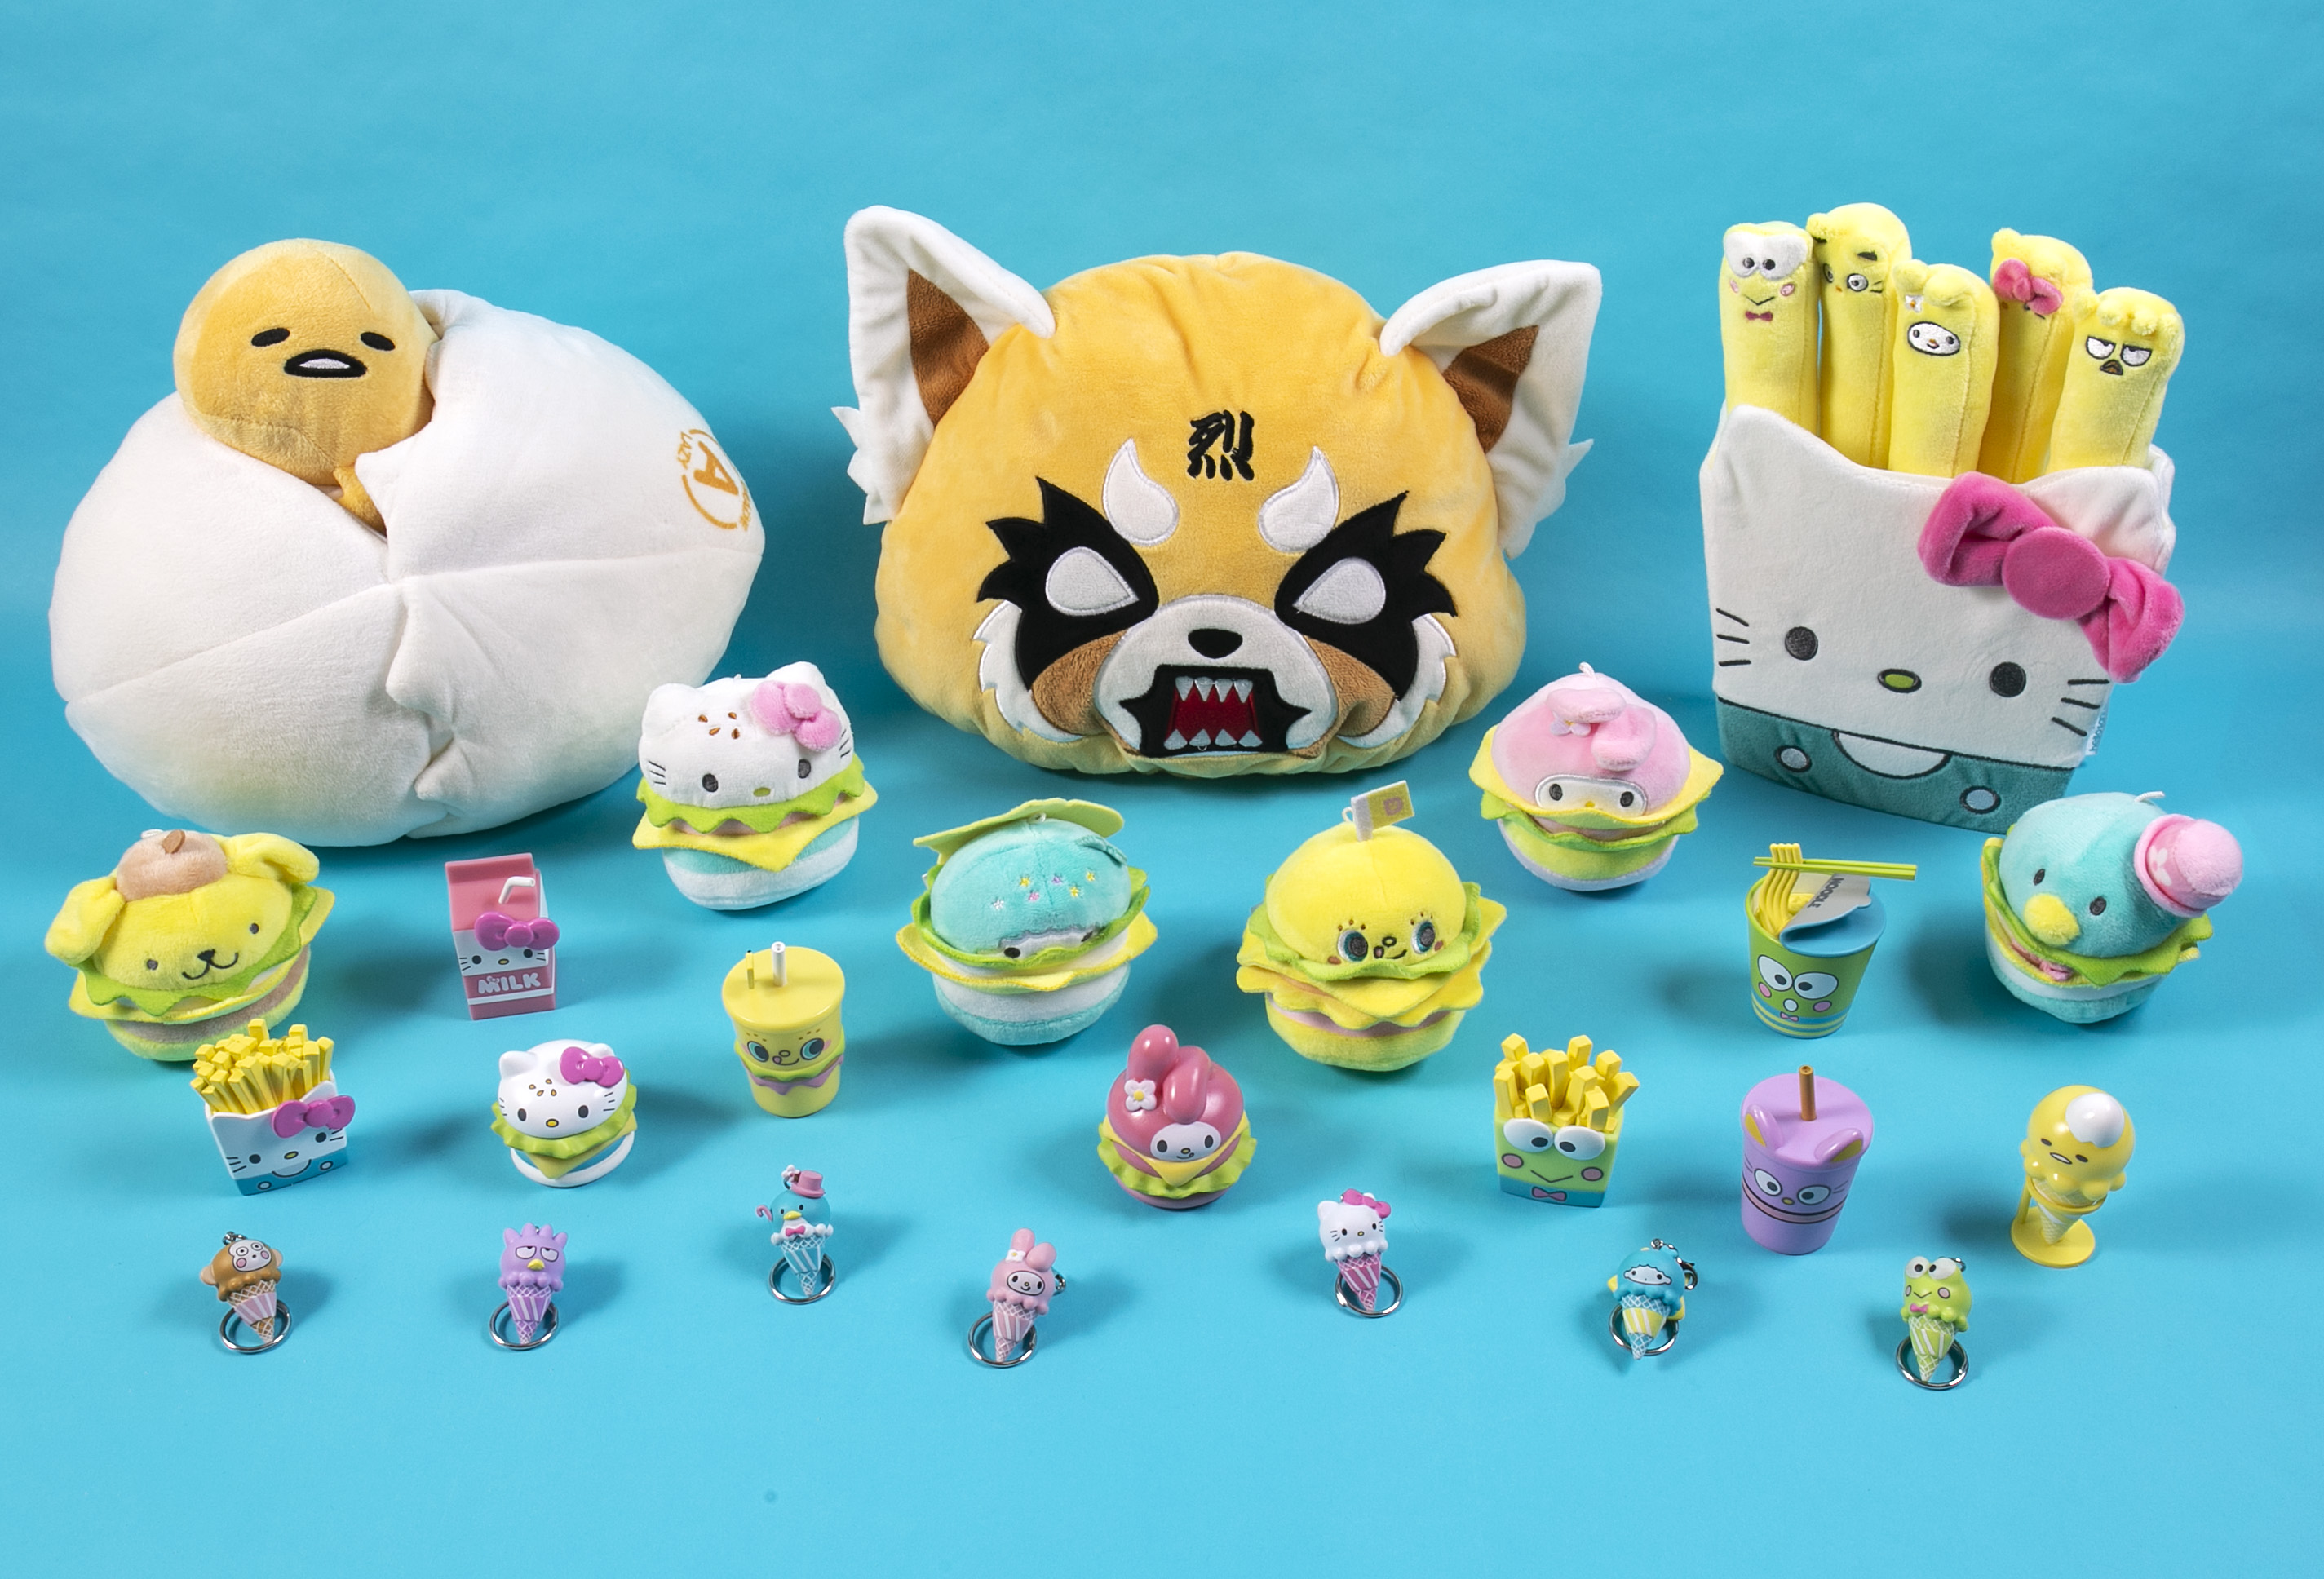 Kidrobot x Sanrio Hello Kitty Fries Plush